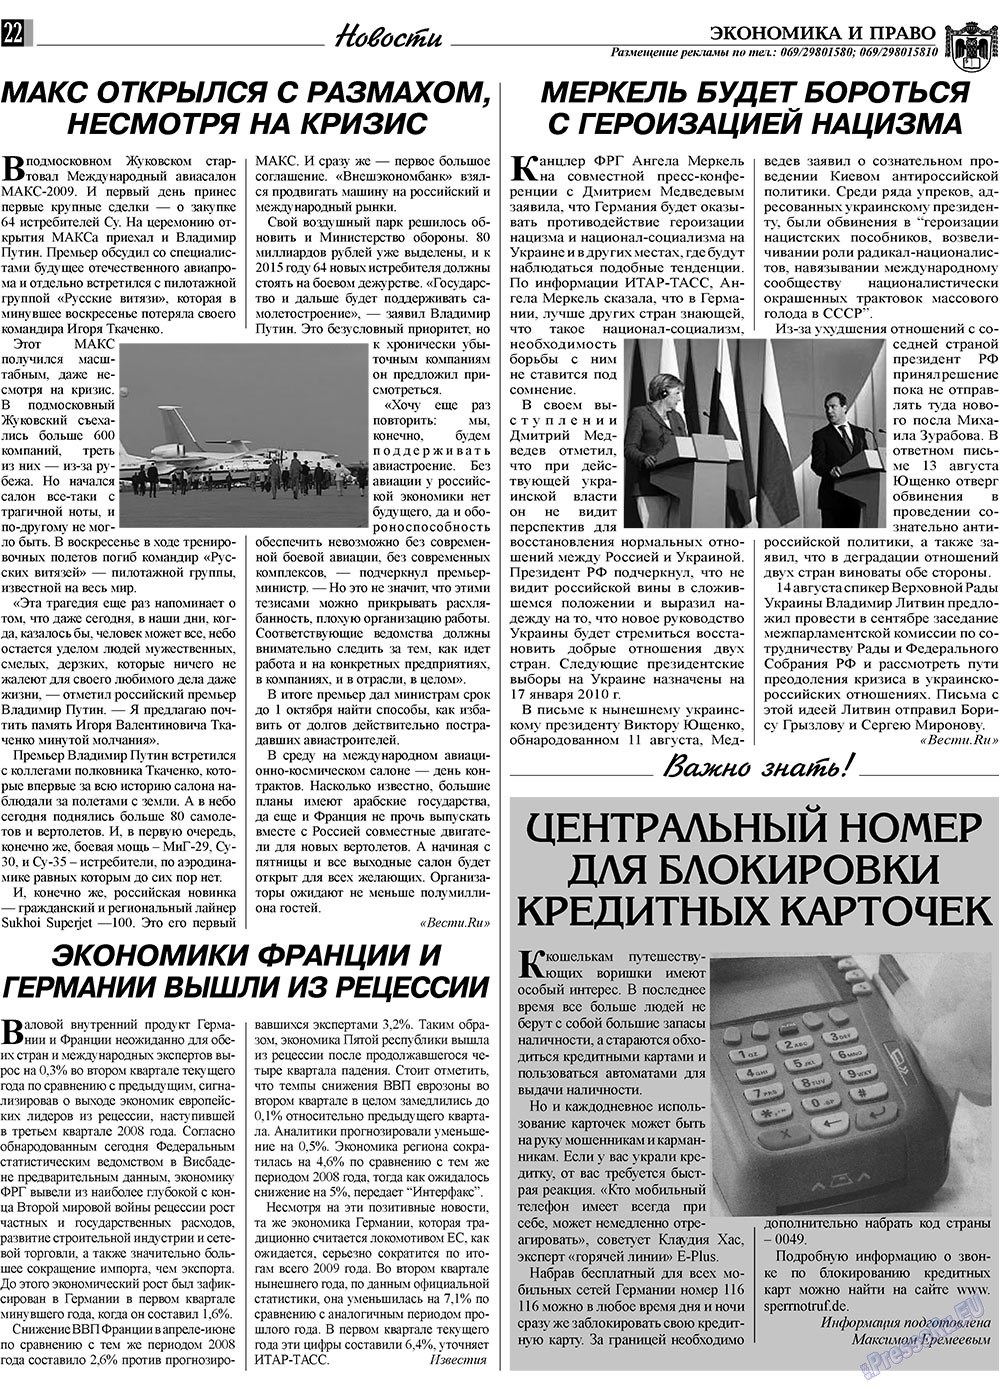 Экономика и право, газета. 2009 №9 стр.22